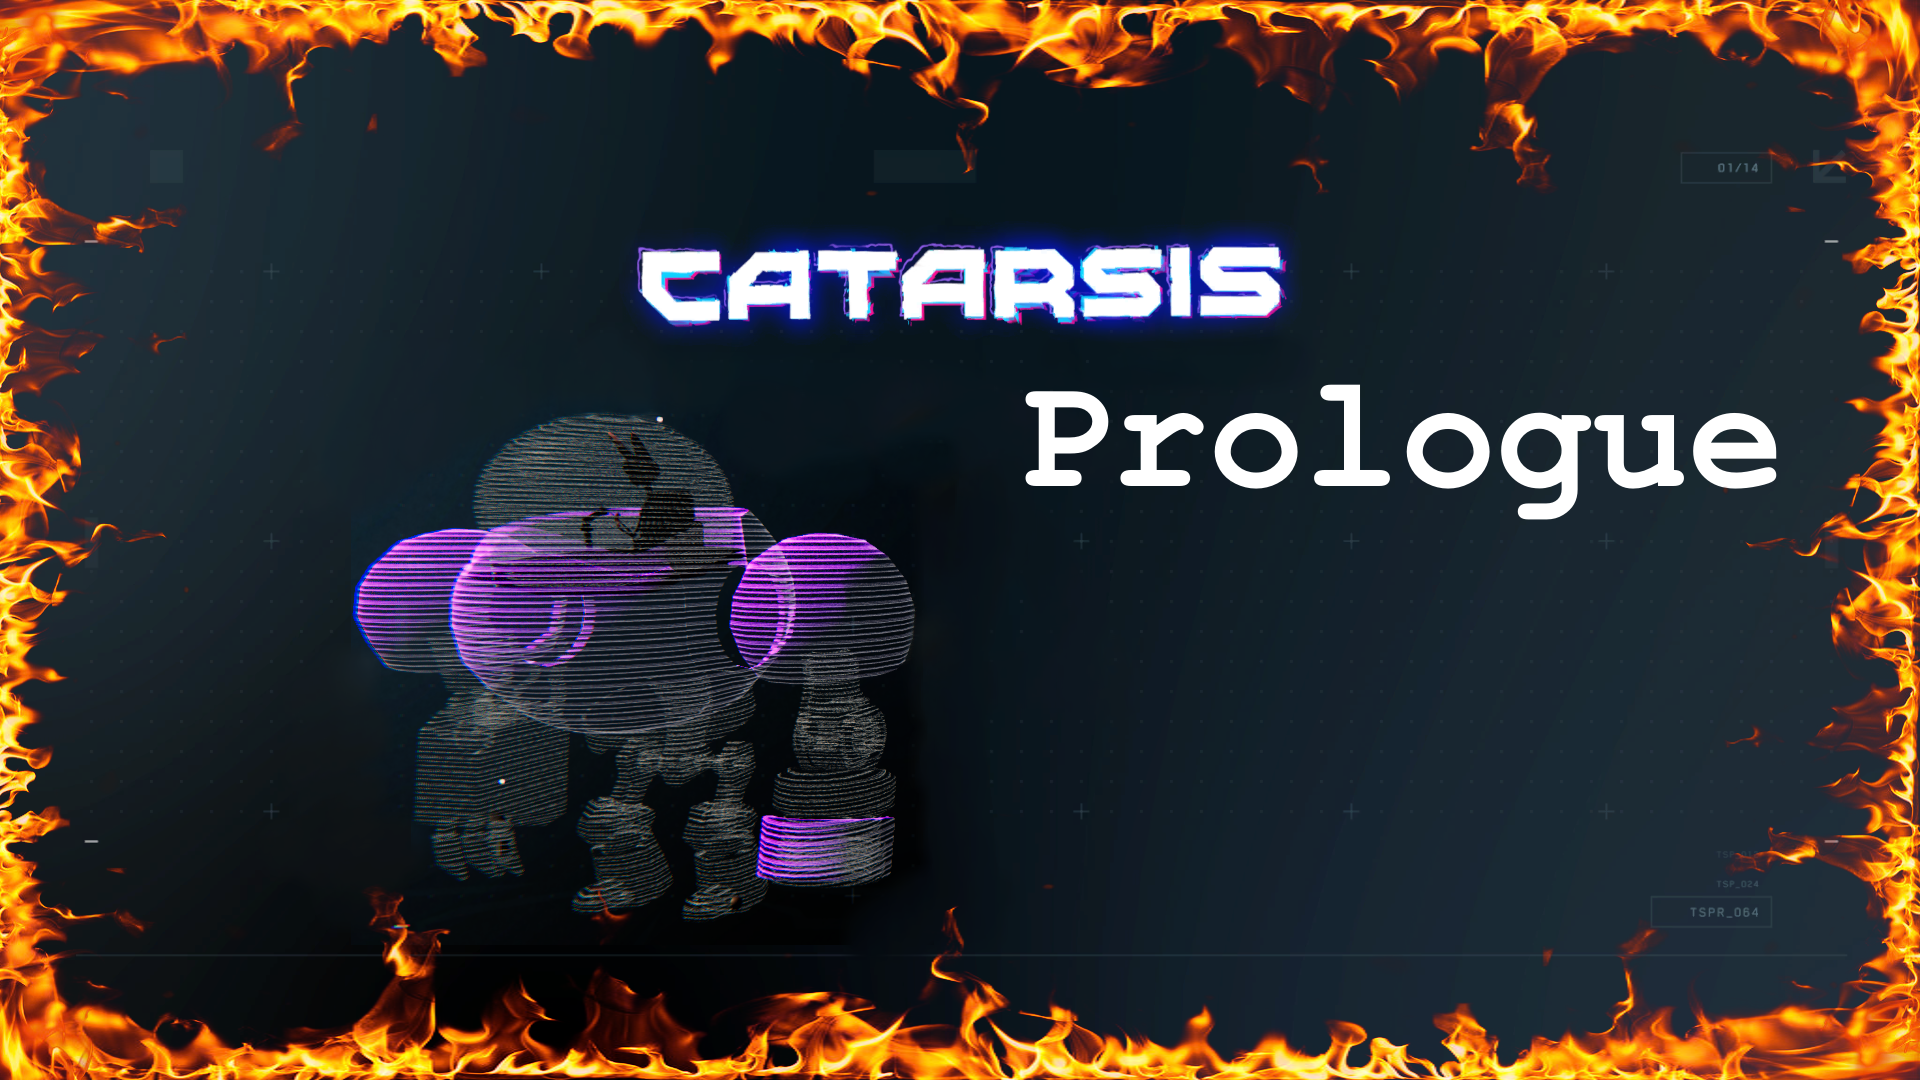 Catarsis Prologue